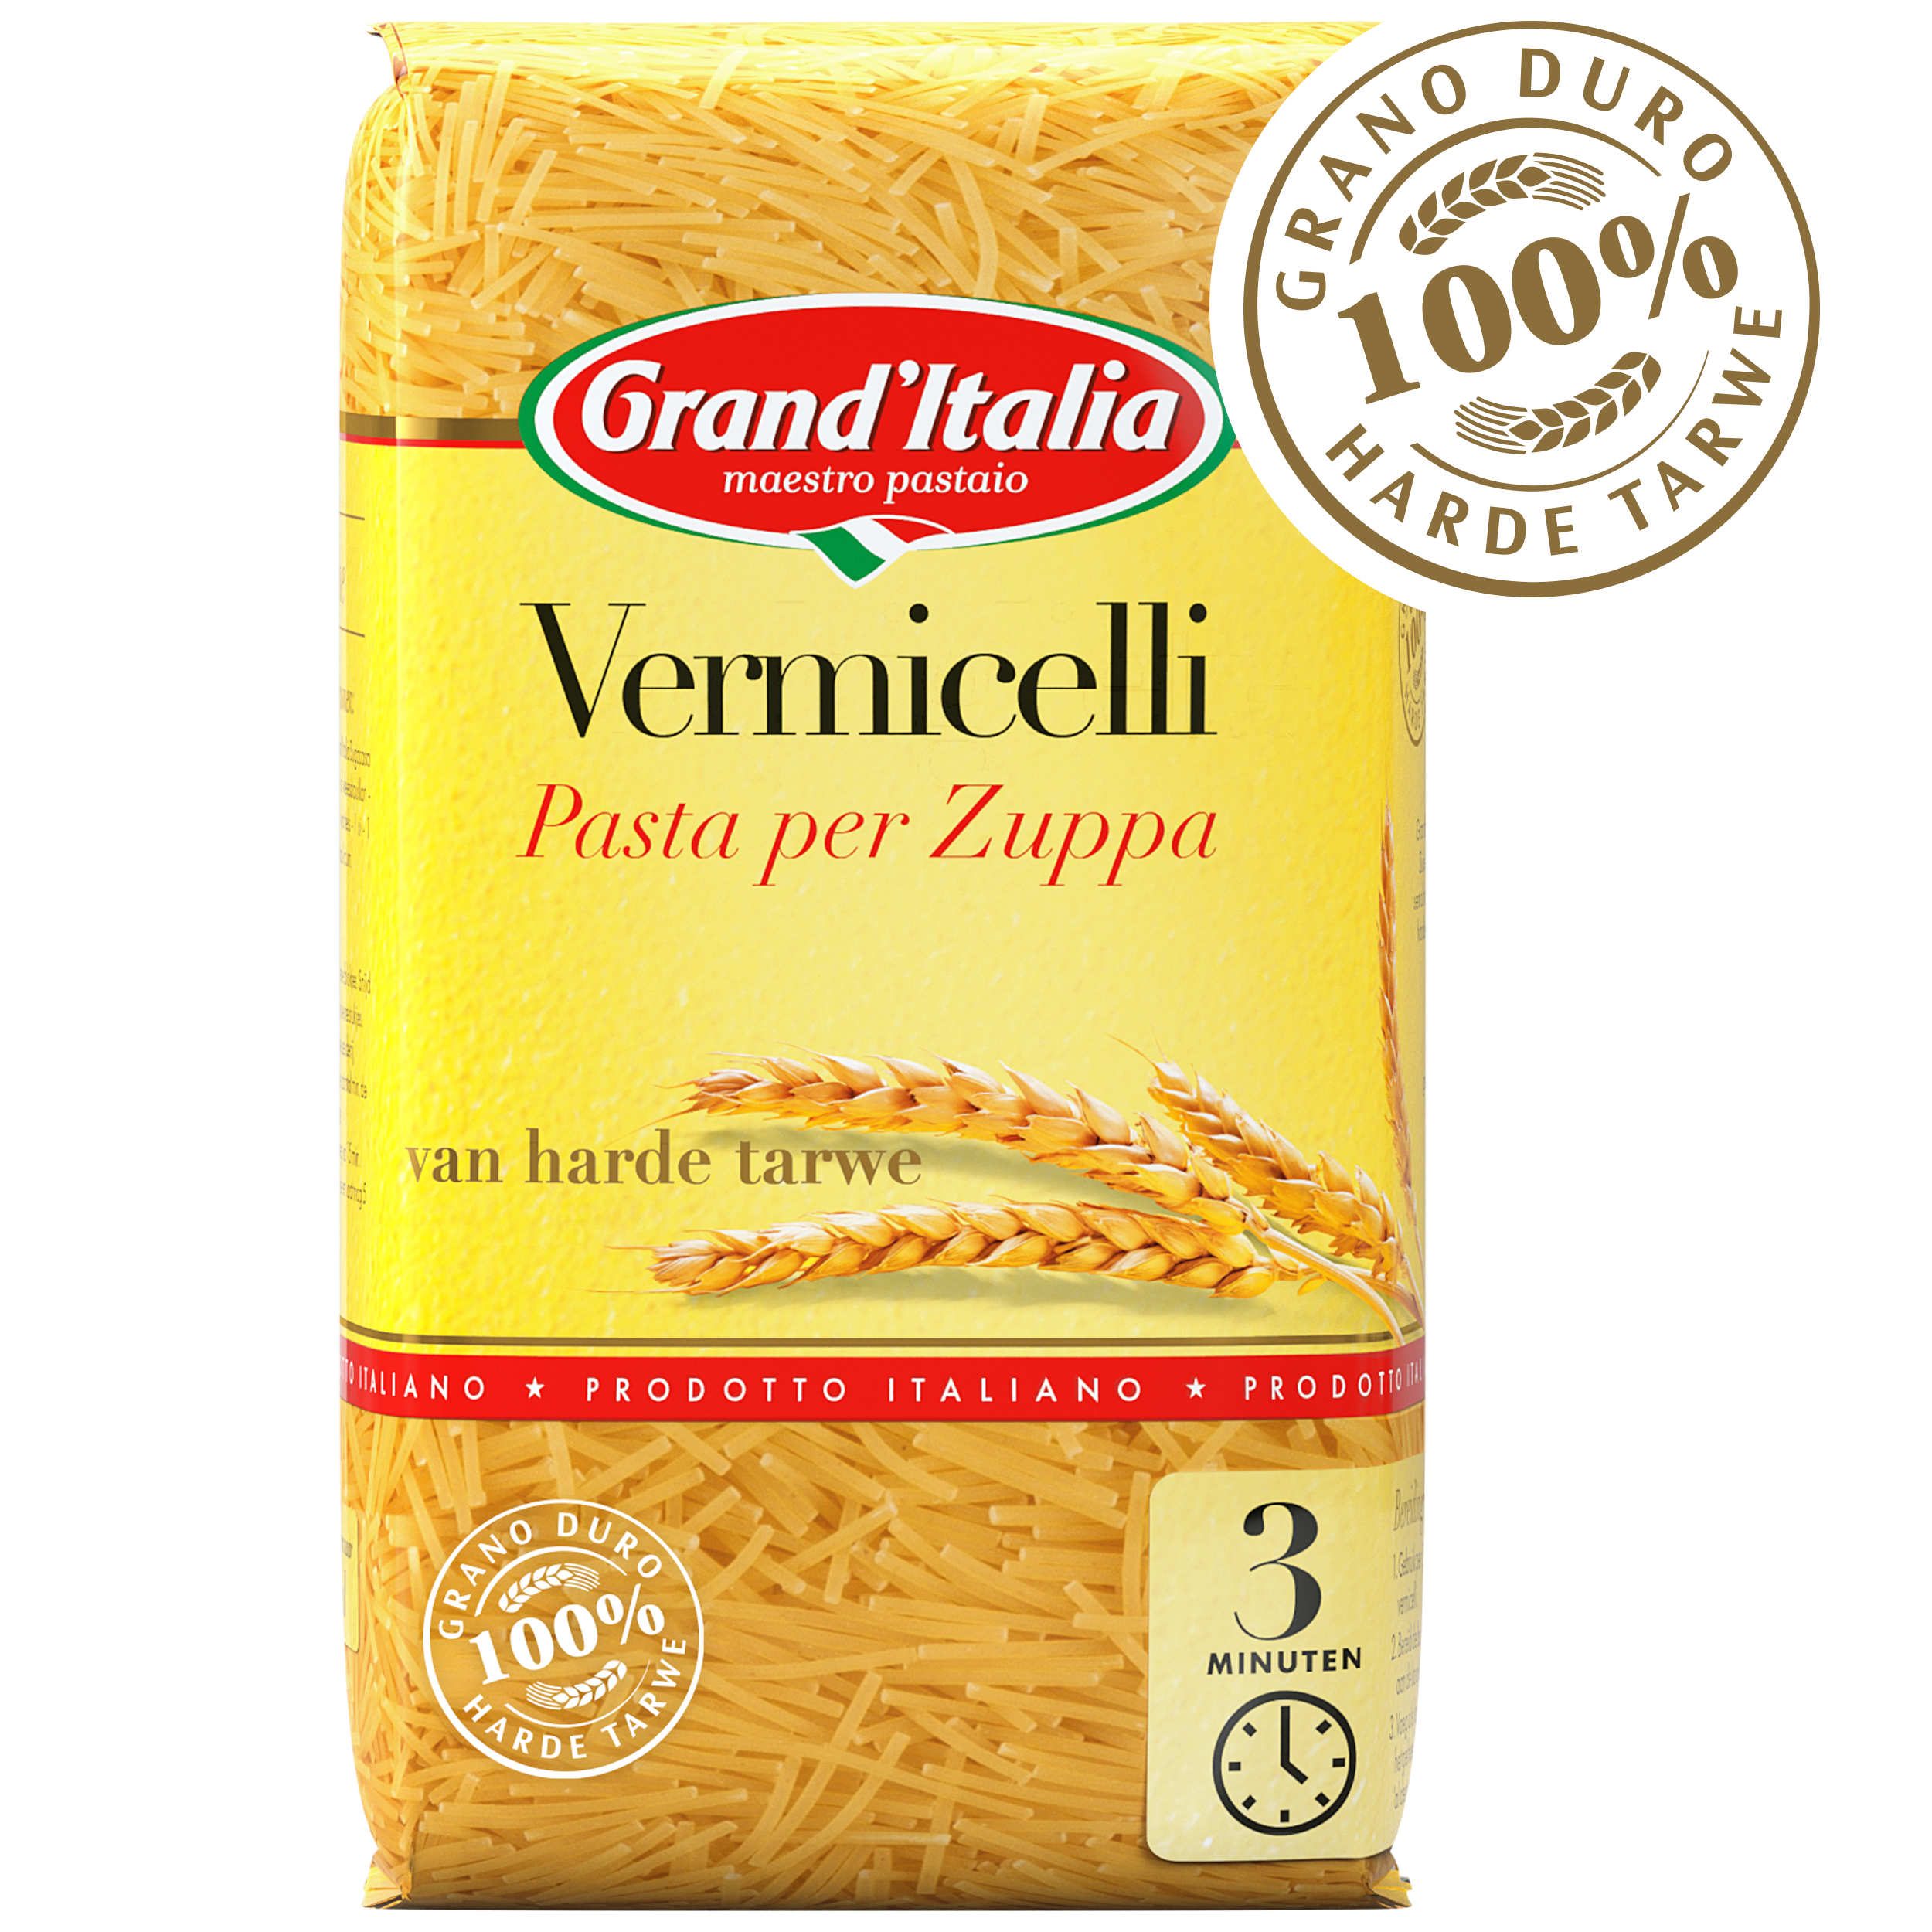 Pasta Vermicelli Pasta per Zuppa 250g claim Grand'Italia